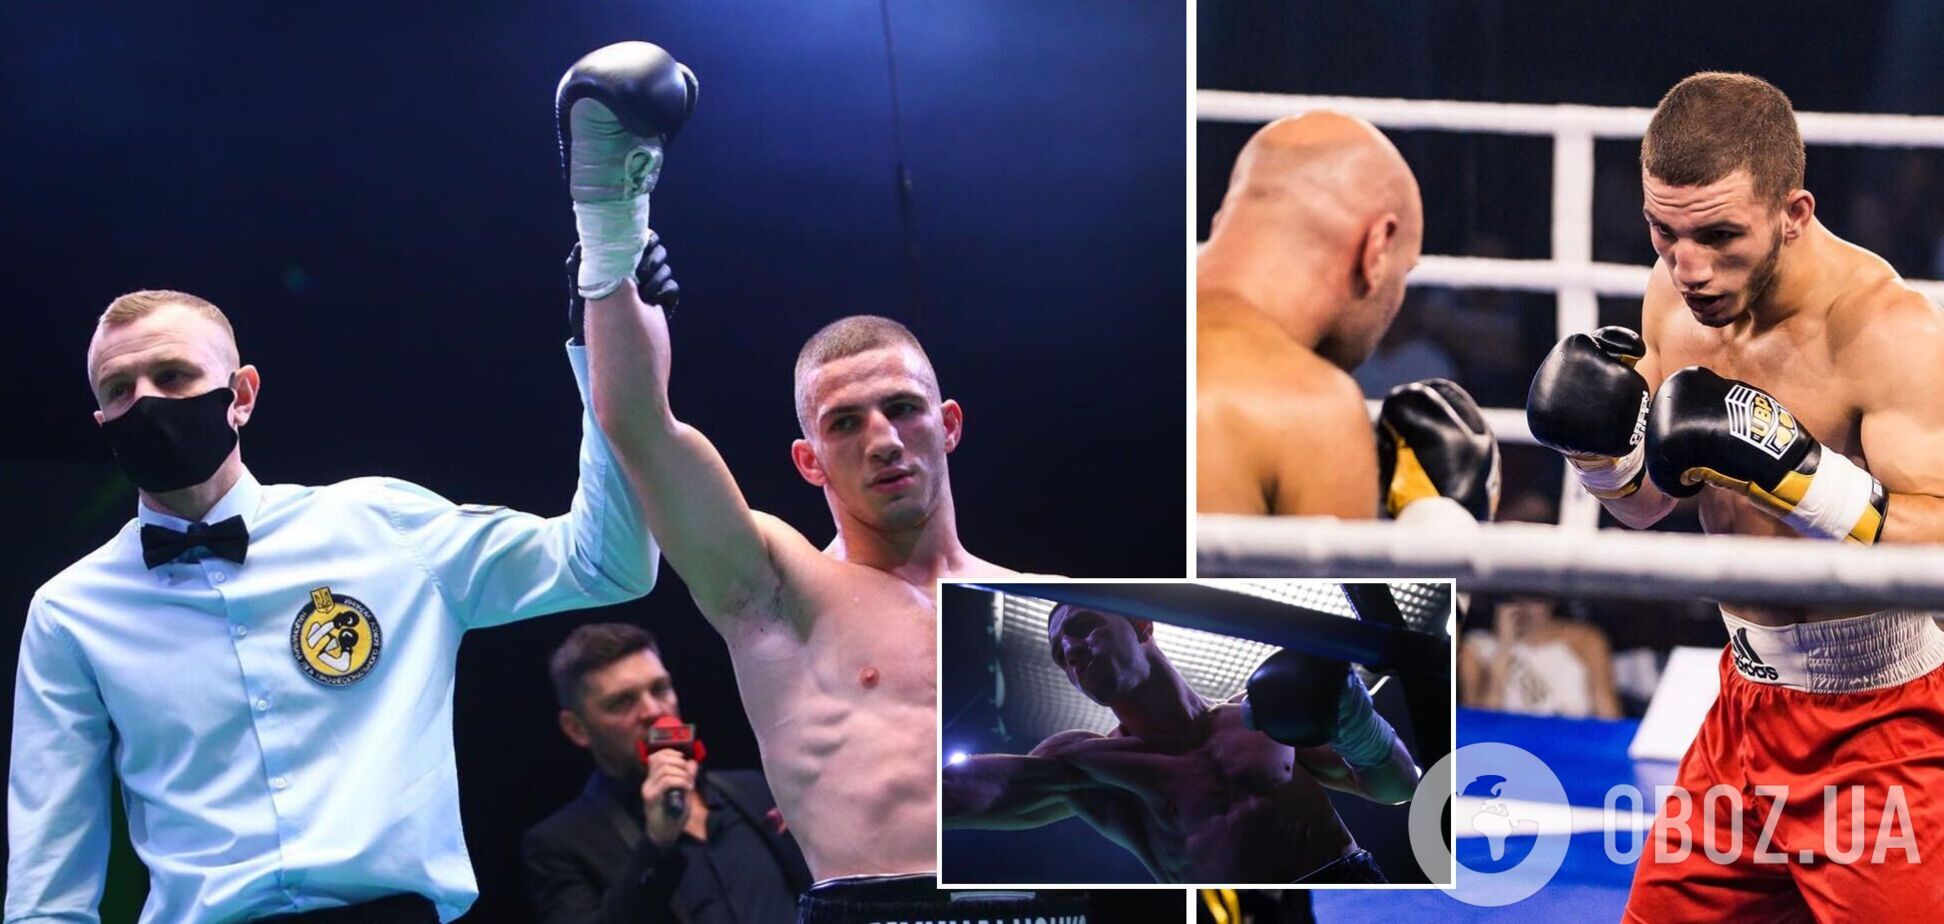 Непобедимый украинский боксер выиграл бой нокаутом в 1-м раунде. Видео